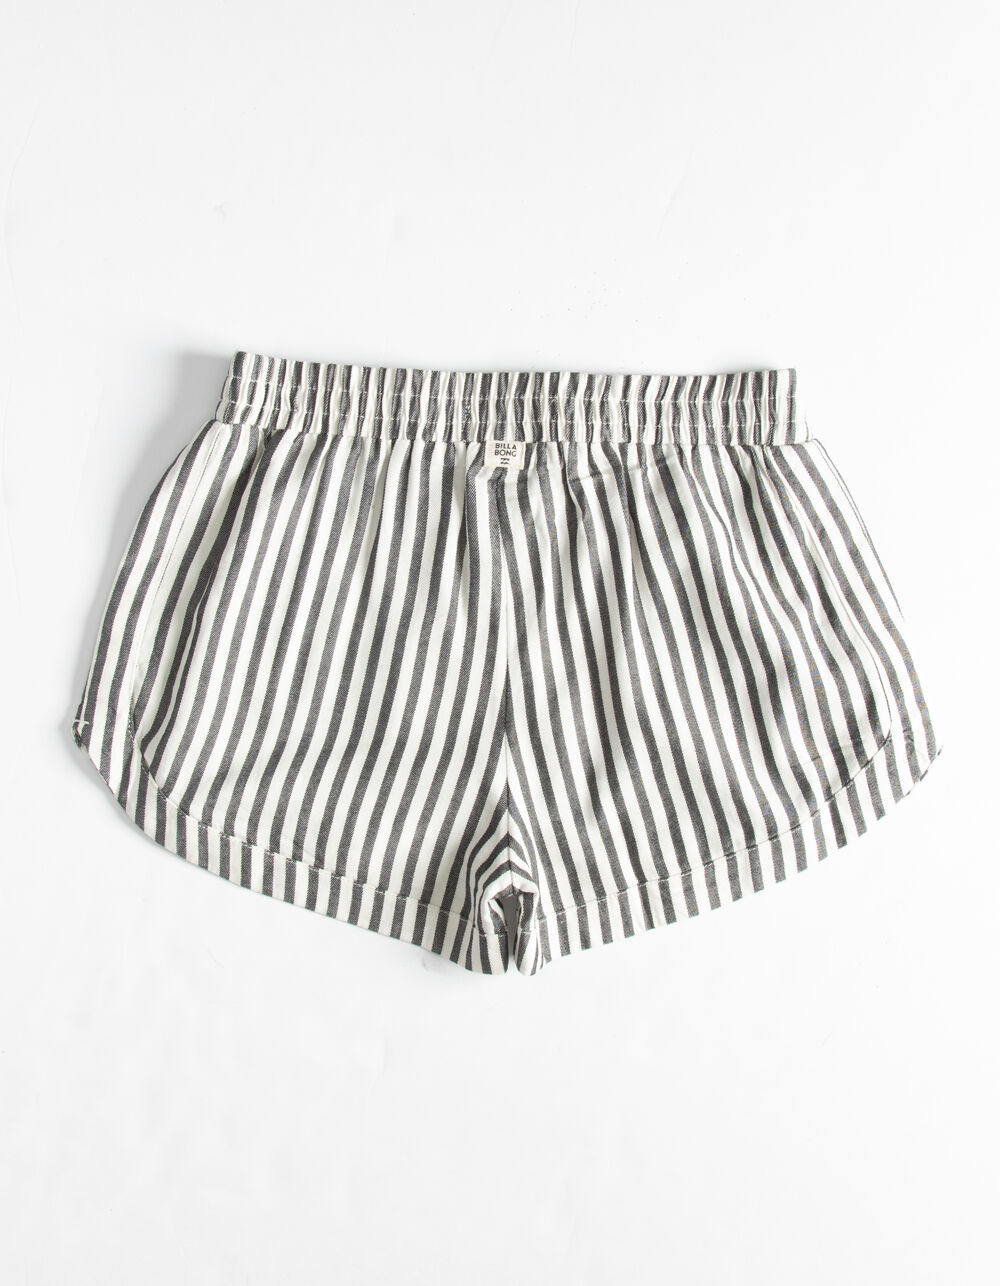 BILLABONG Mad For You Girls Stripe Shorts - STRIPE | Tillys